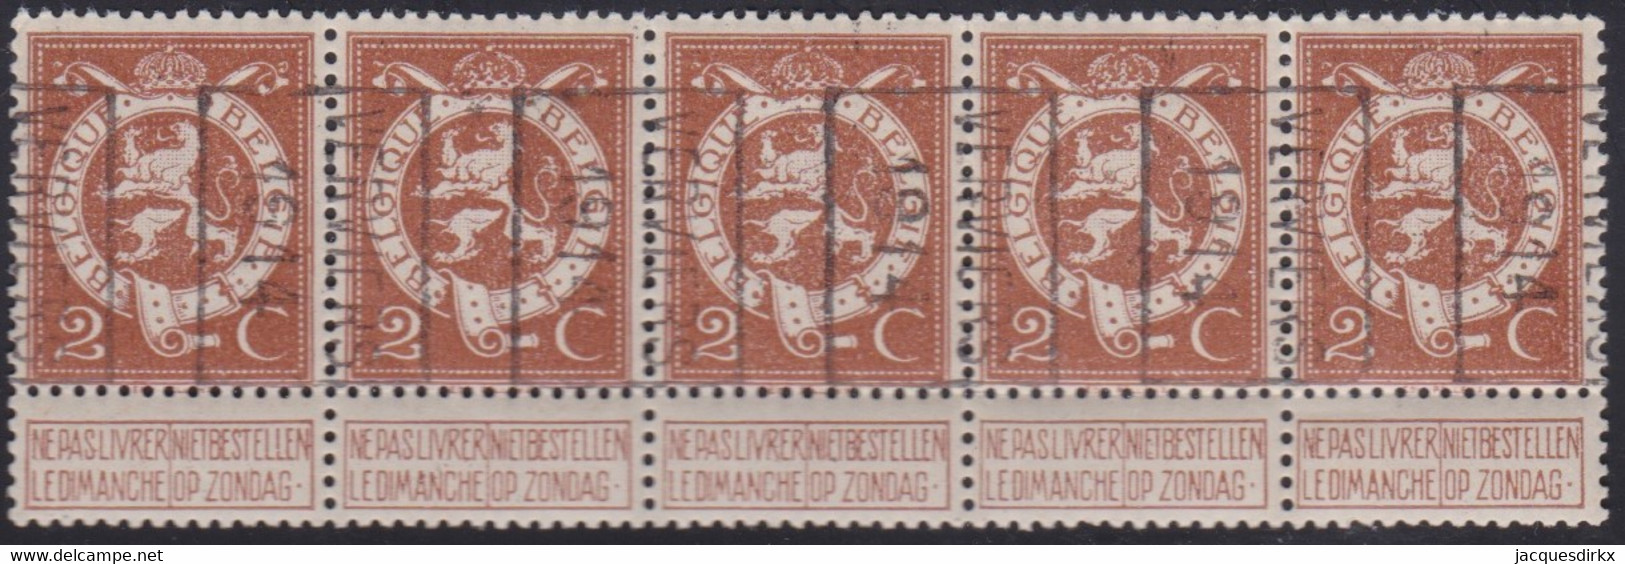 Belgie   .  OBP   .   Strook 5 Zegels 2381   (2 Paren)      .     **   .     Postfris  . / .   Neuf SANS Charniére - Rollini 1910-19